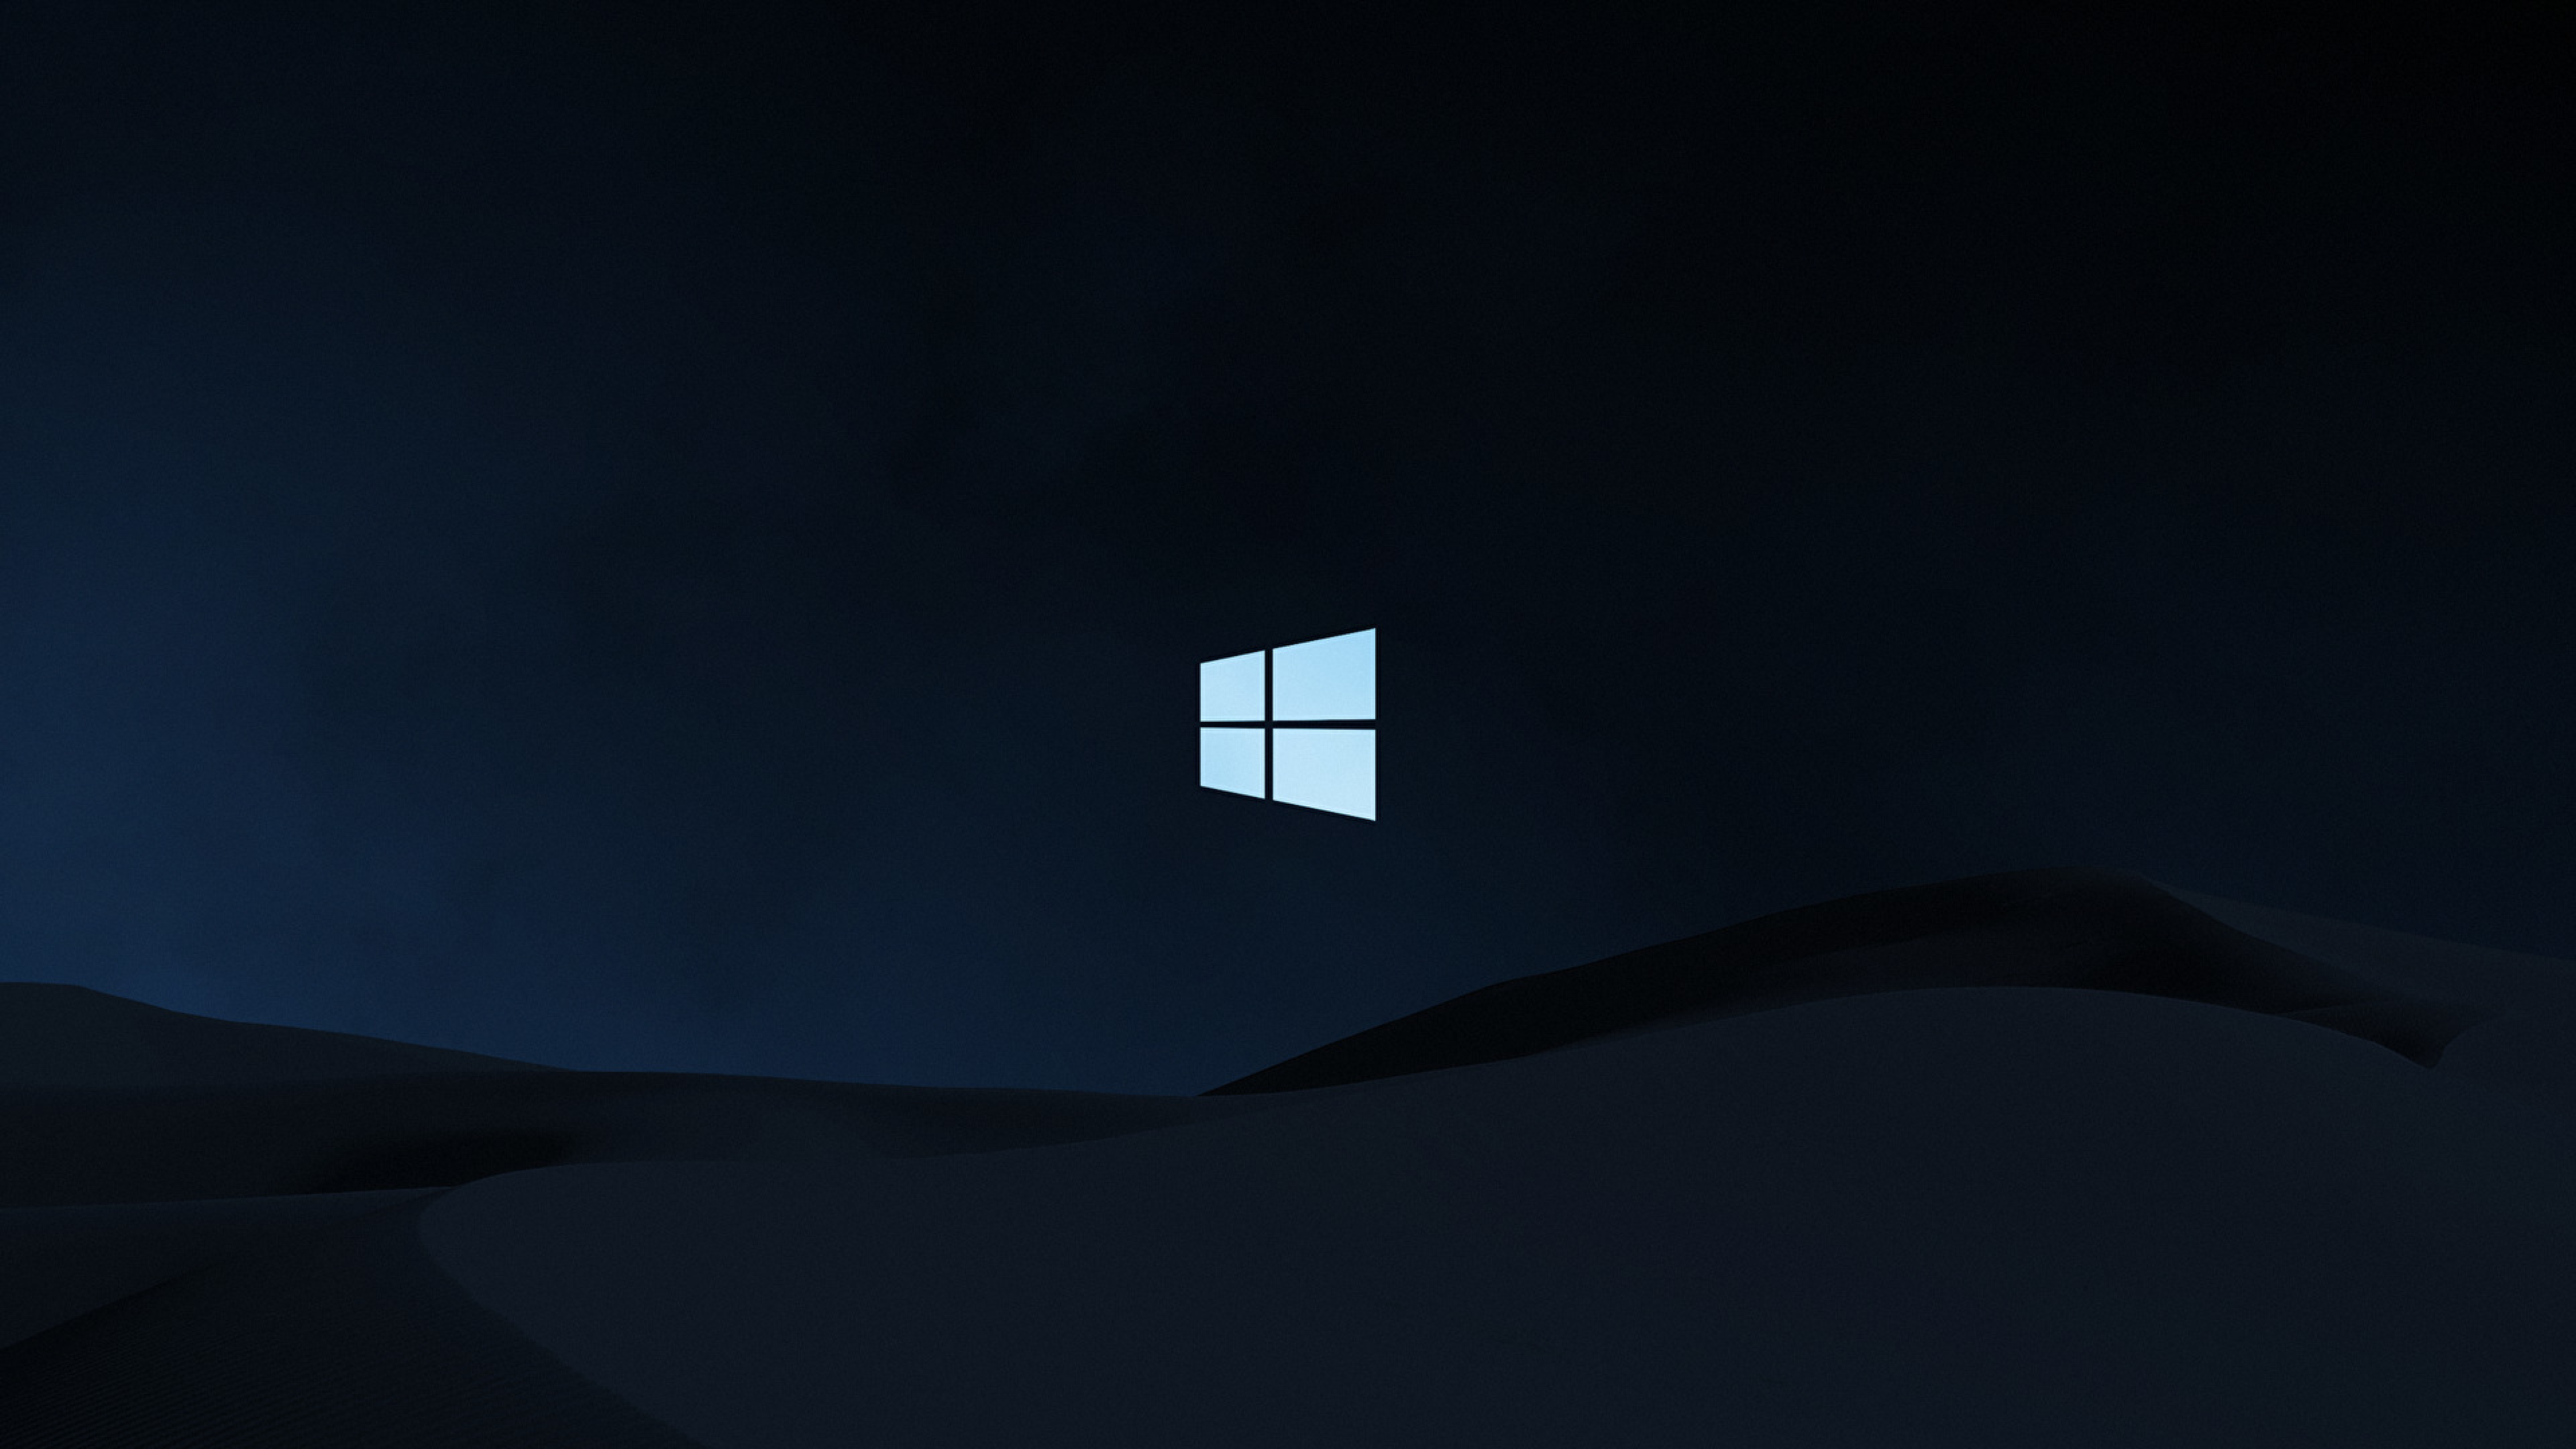 7680x4320 Windows 10 Clean Dark 8K Background, HD Brands ...